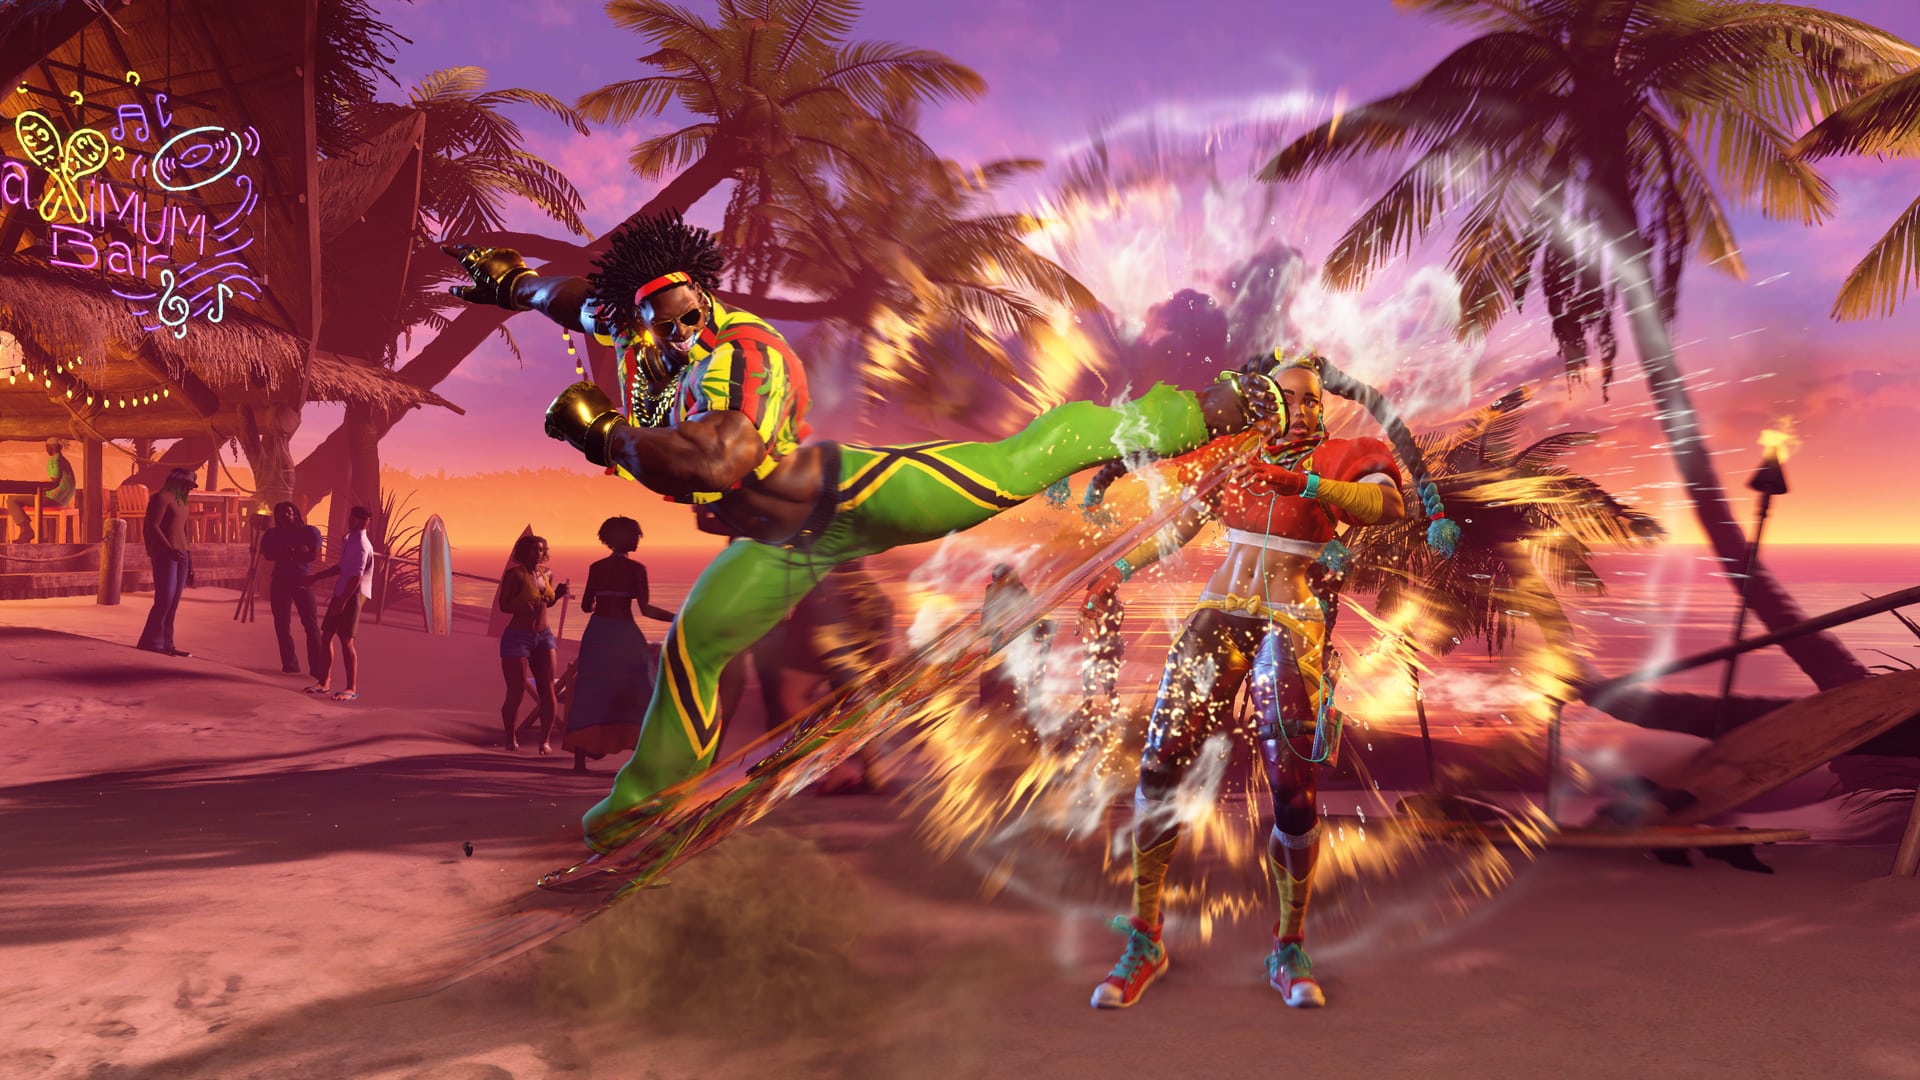 Street Fighter 6 Review - Battle Hardened - GameSpot